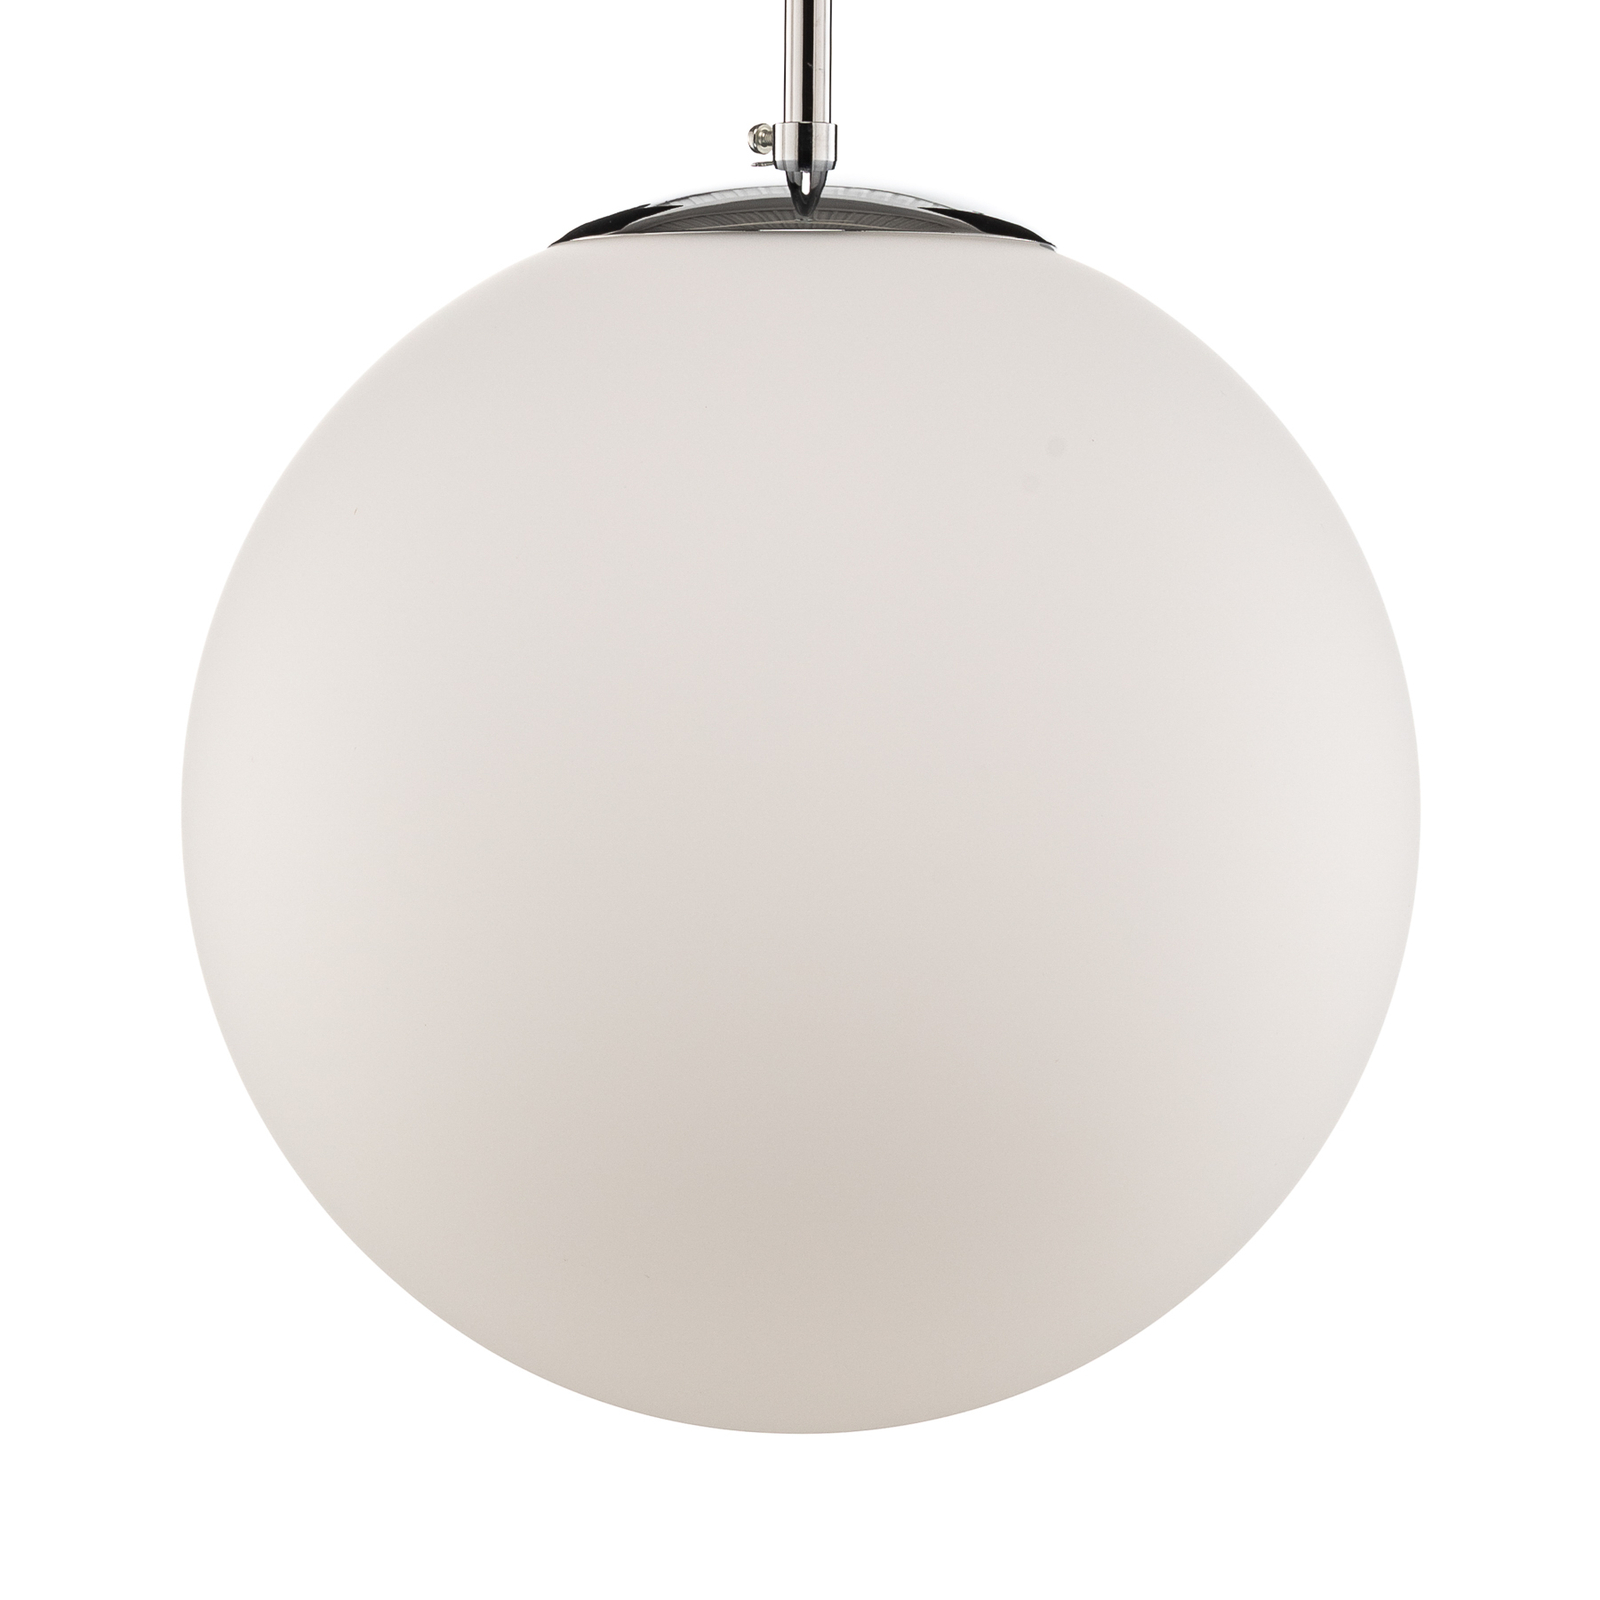 Bosso pendant light, one-bulb, white/chrome 30 cm